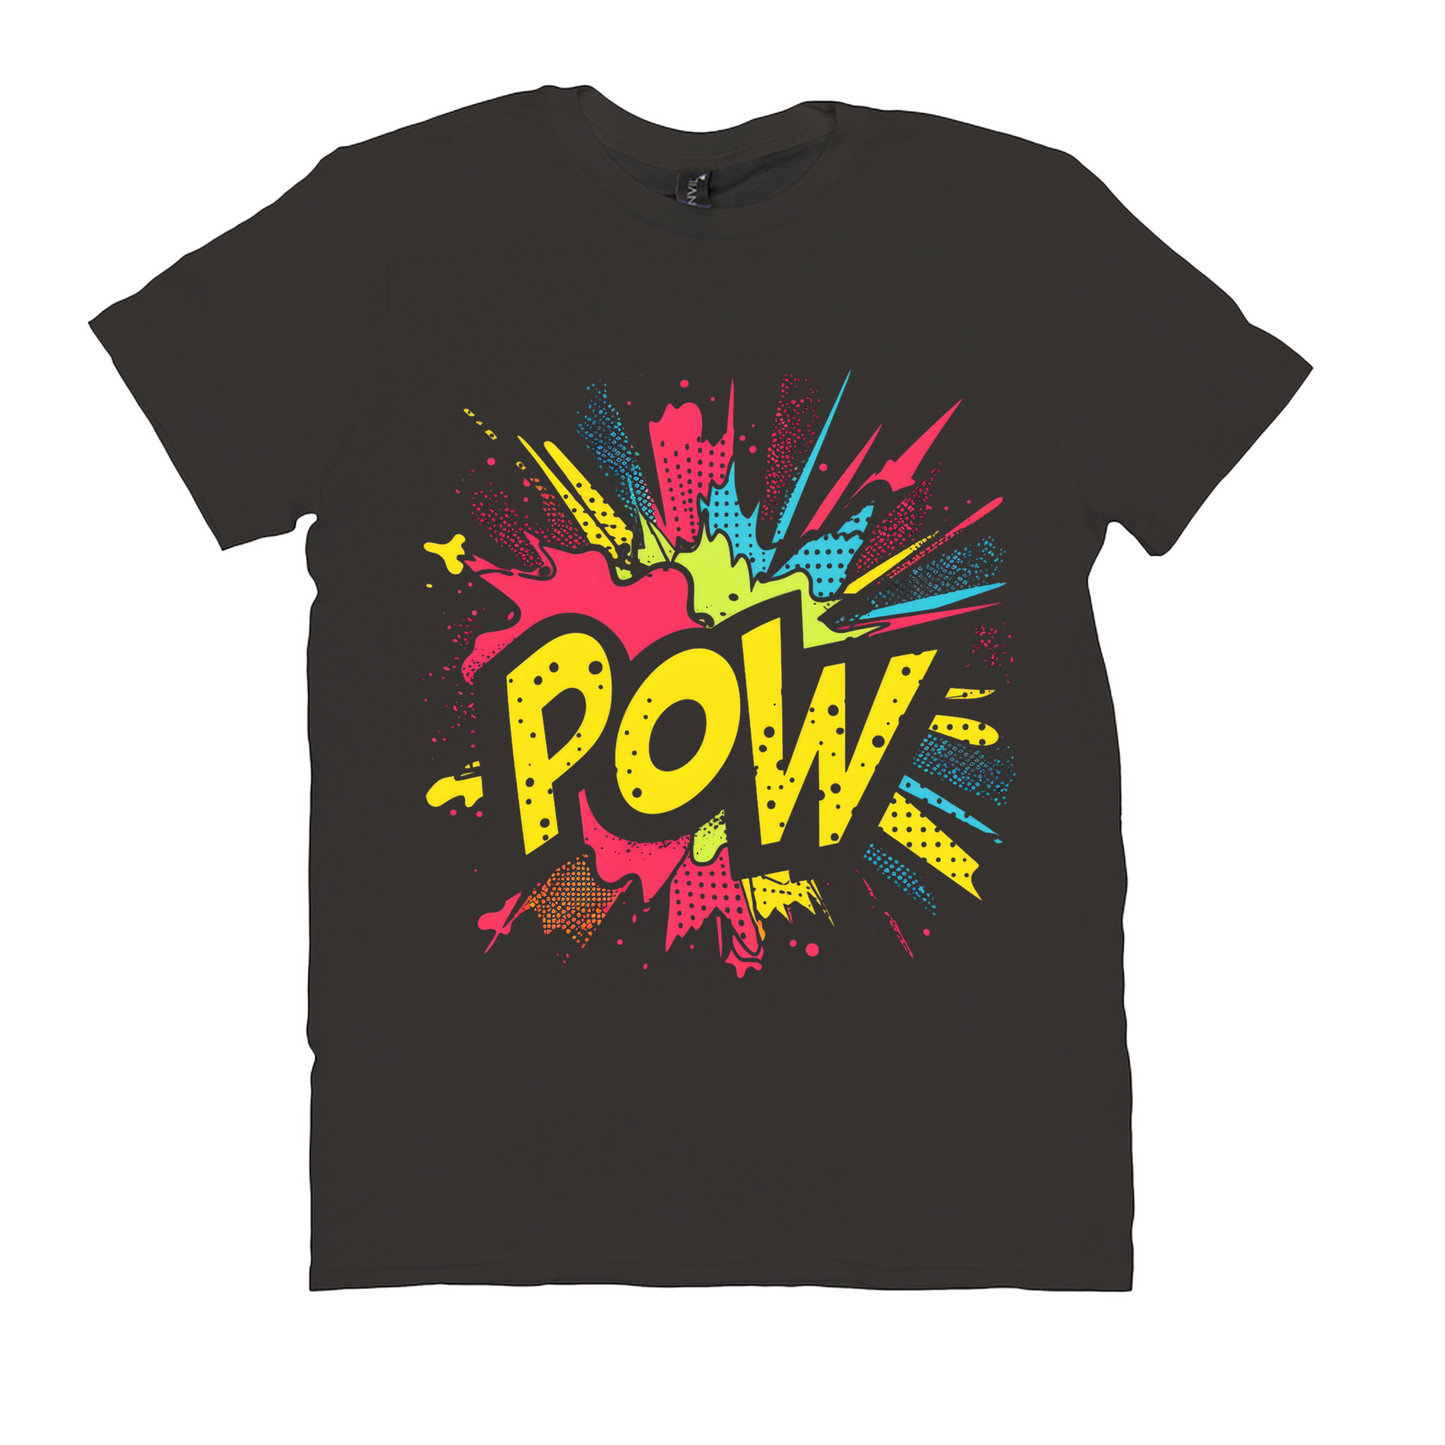 POW Heroes Unite T-Shirt